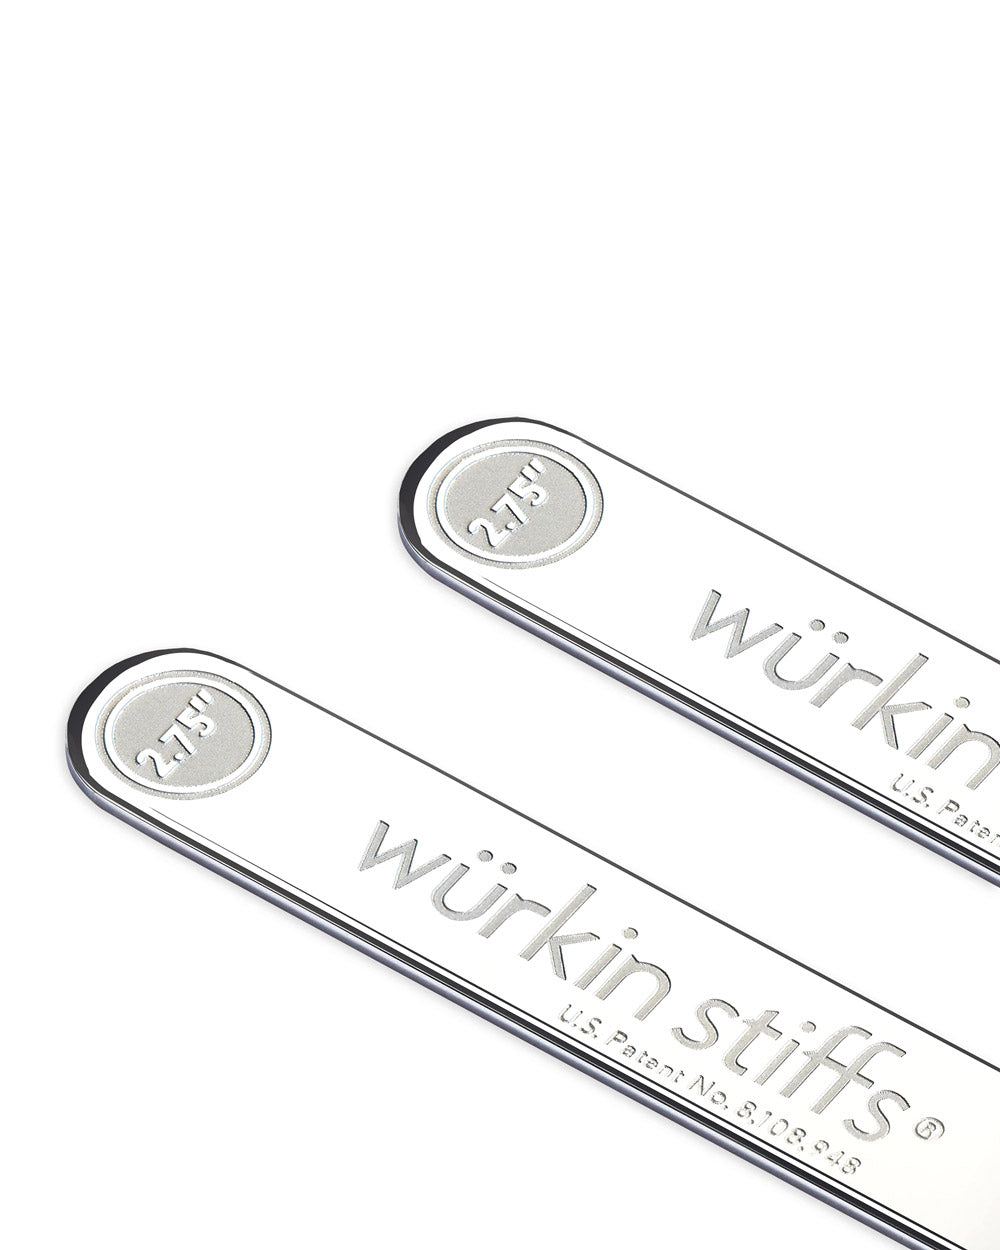 Wurkin Stiffs 2.75 Magnetic Power Collar Stays – Stanley Korshak